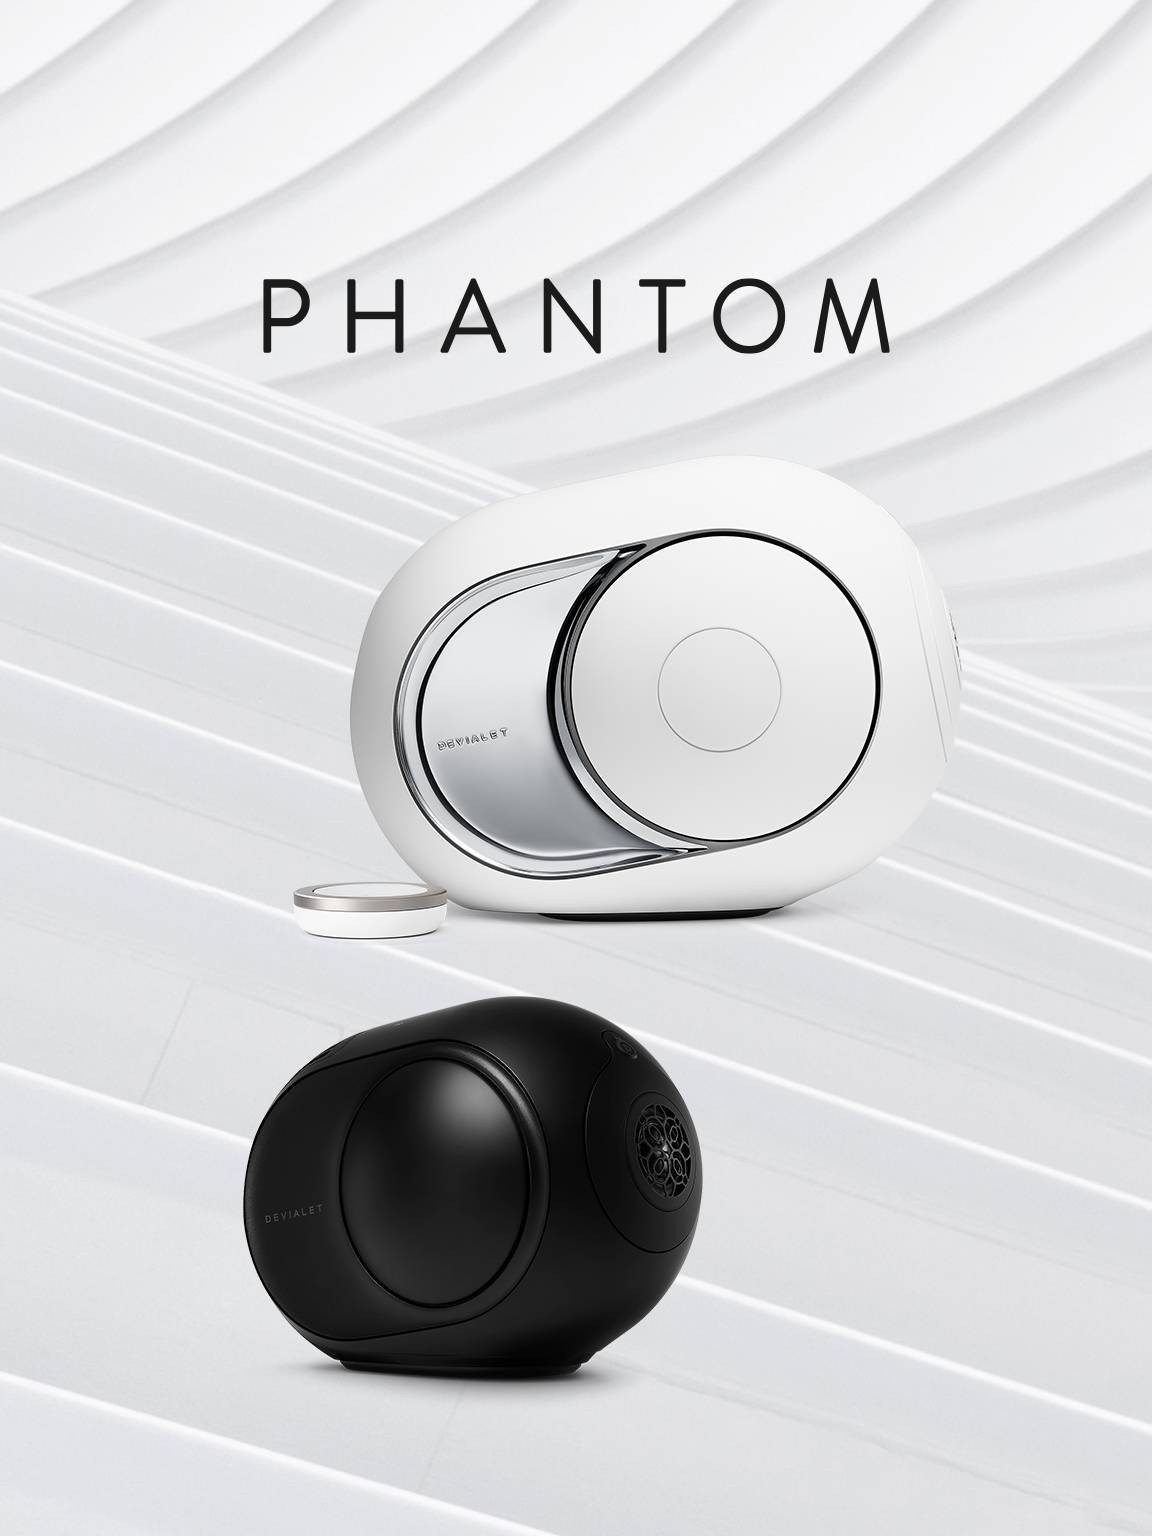 Phantom High-end Speakers - Devialet